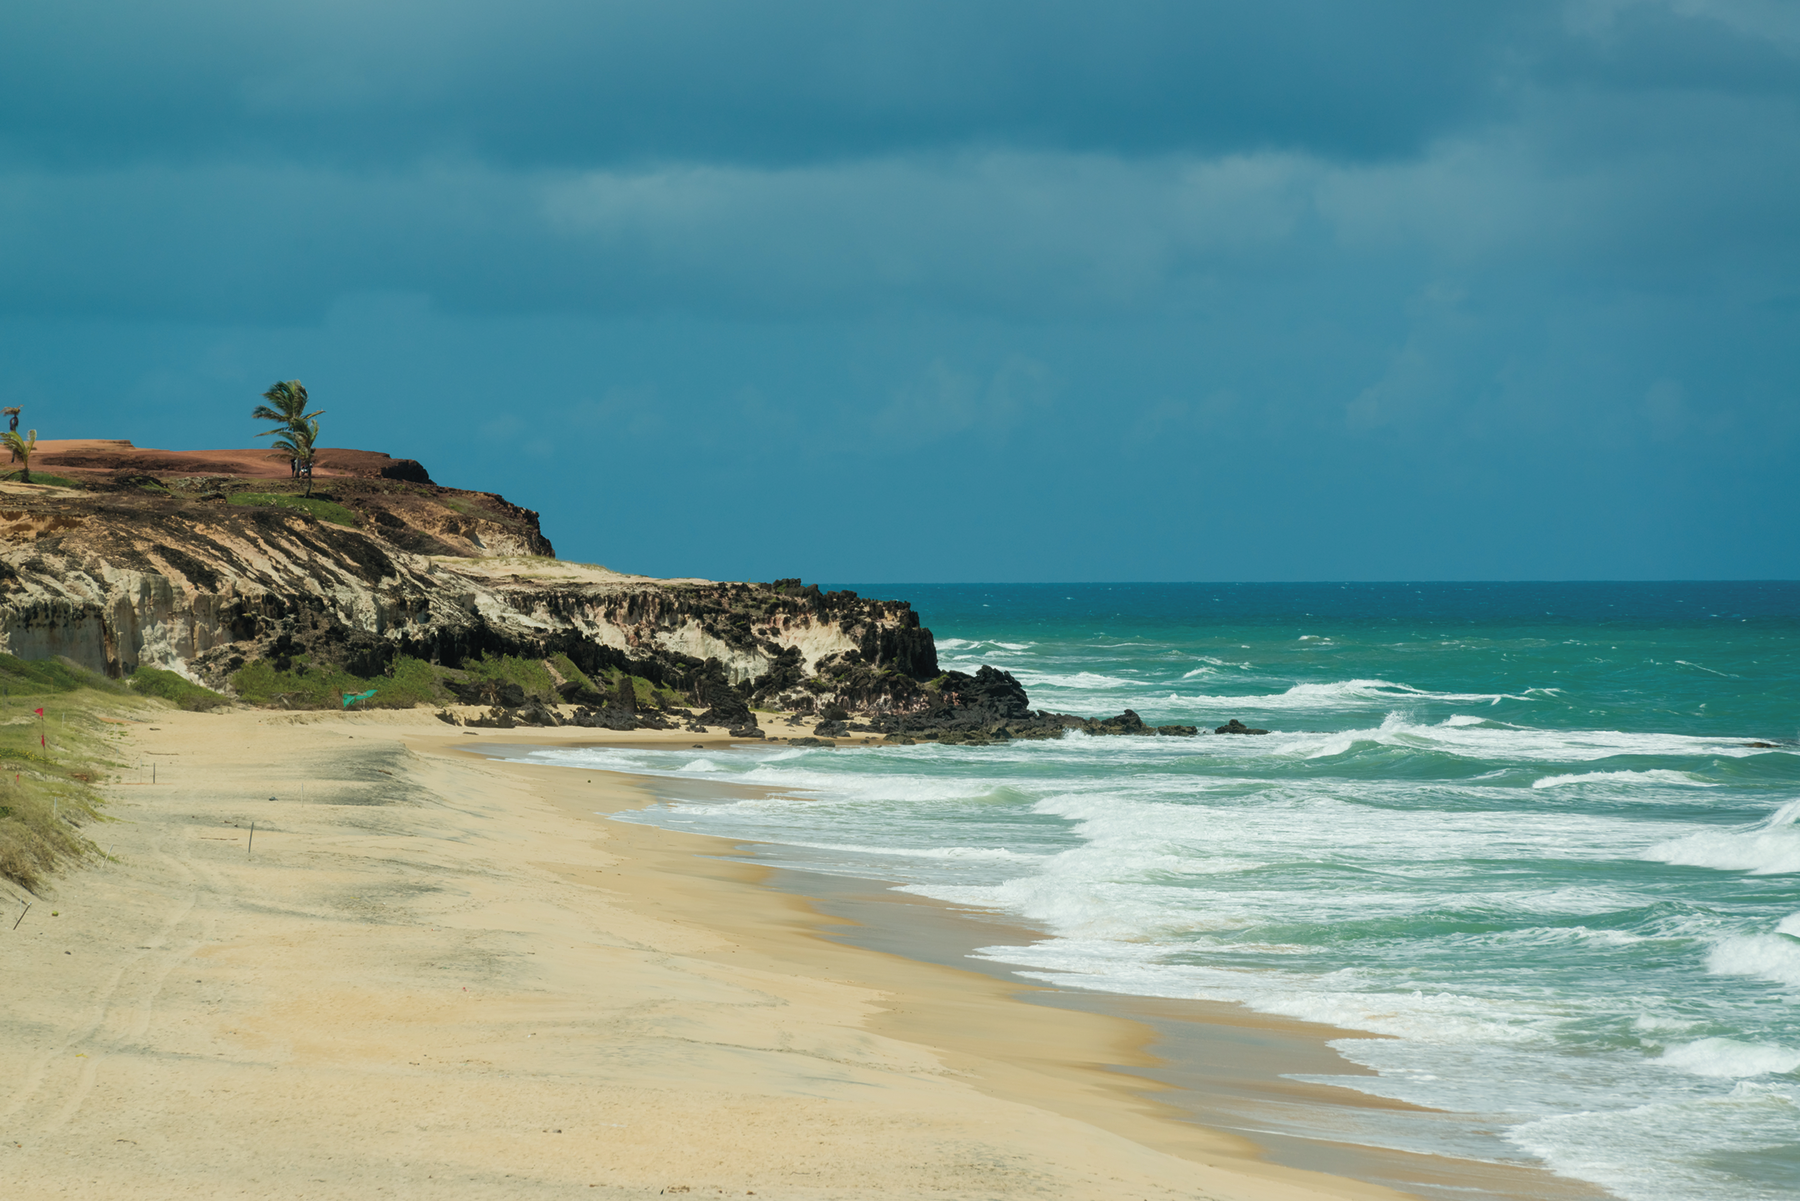 Fotografia. Orla de uma praia com uma pequena elevação rochosa na faixa de areia, onde há algumas palmeiras. No mar, ondas.